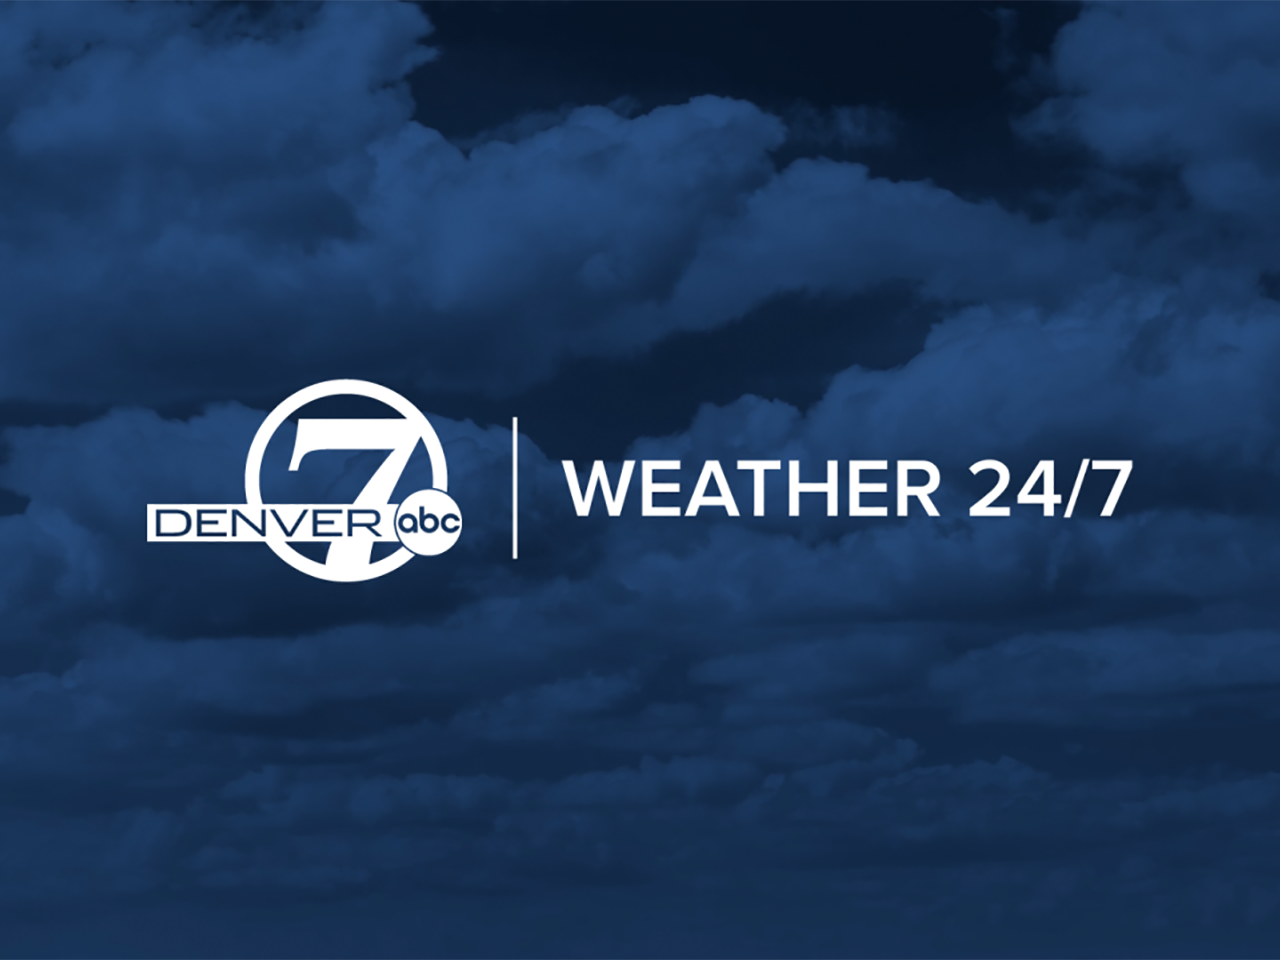 denver7-weather247-2020-4x3.png